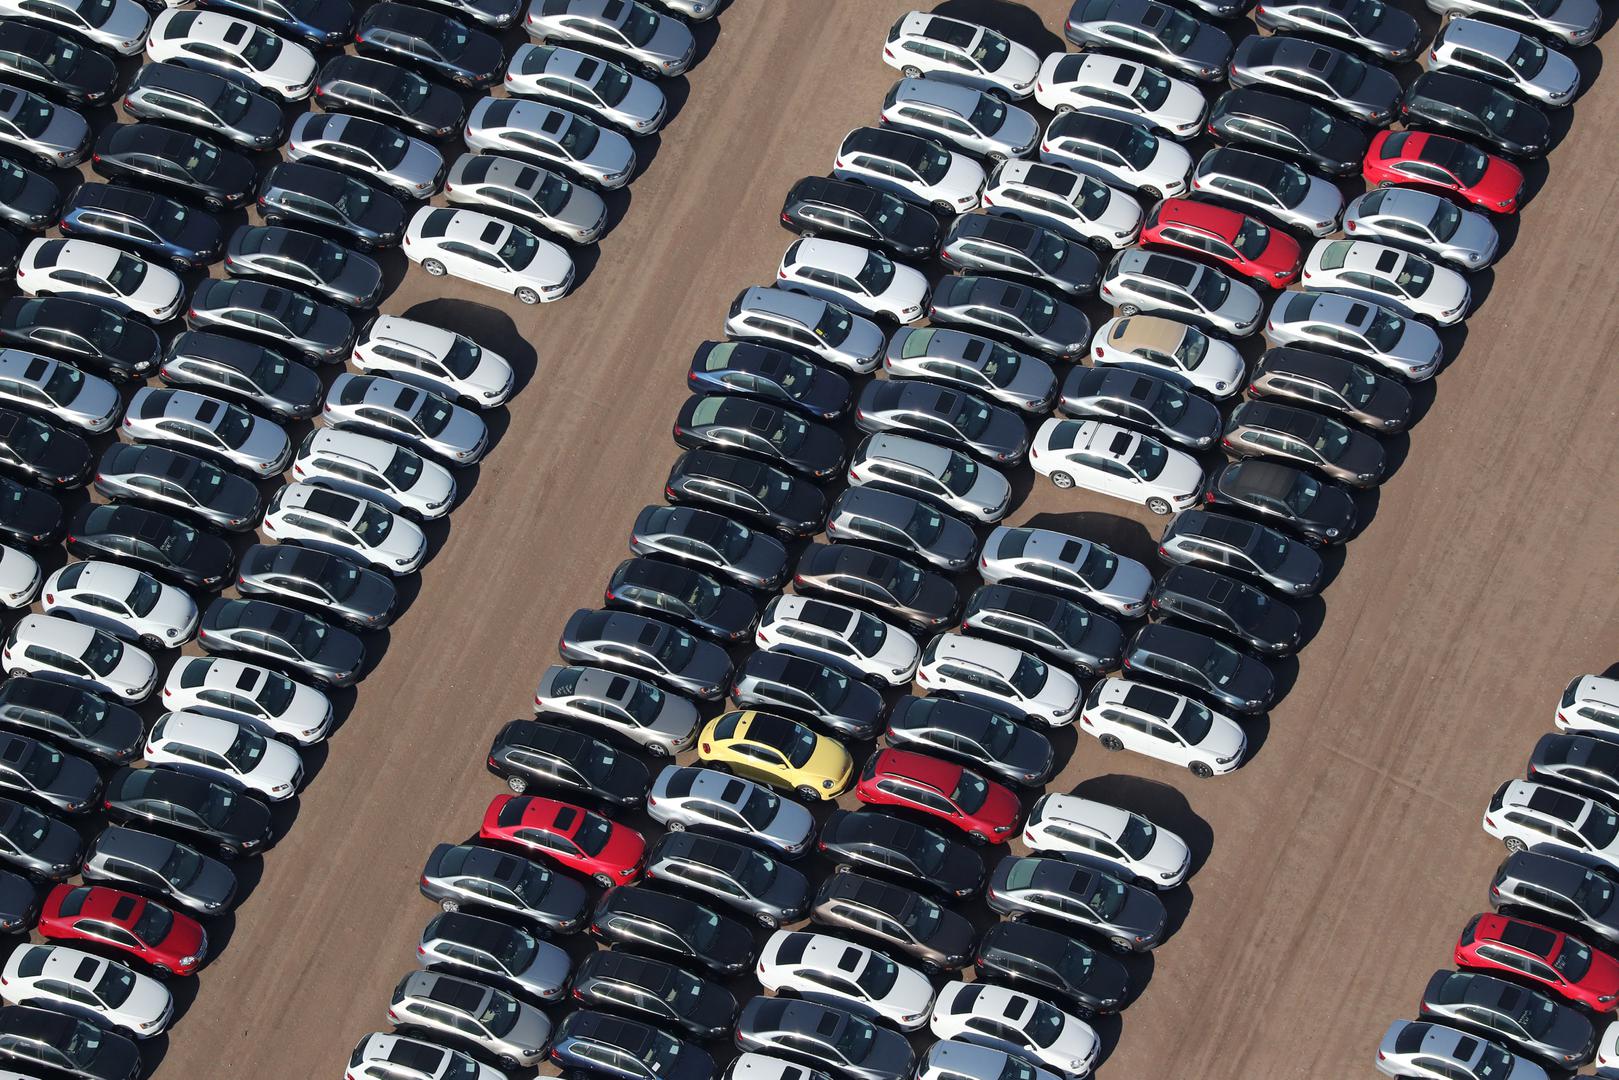 Prostor podsjeća na parking u ogromnom prostoru na otvorenom - ali to je zapravo povratni efekt skandala Volkswagena s emisijom ispušnih plinova. 